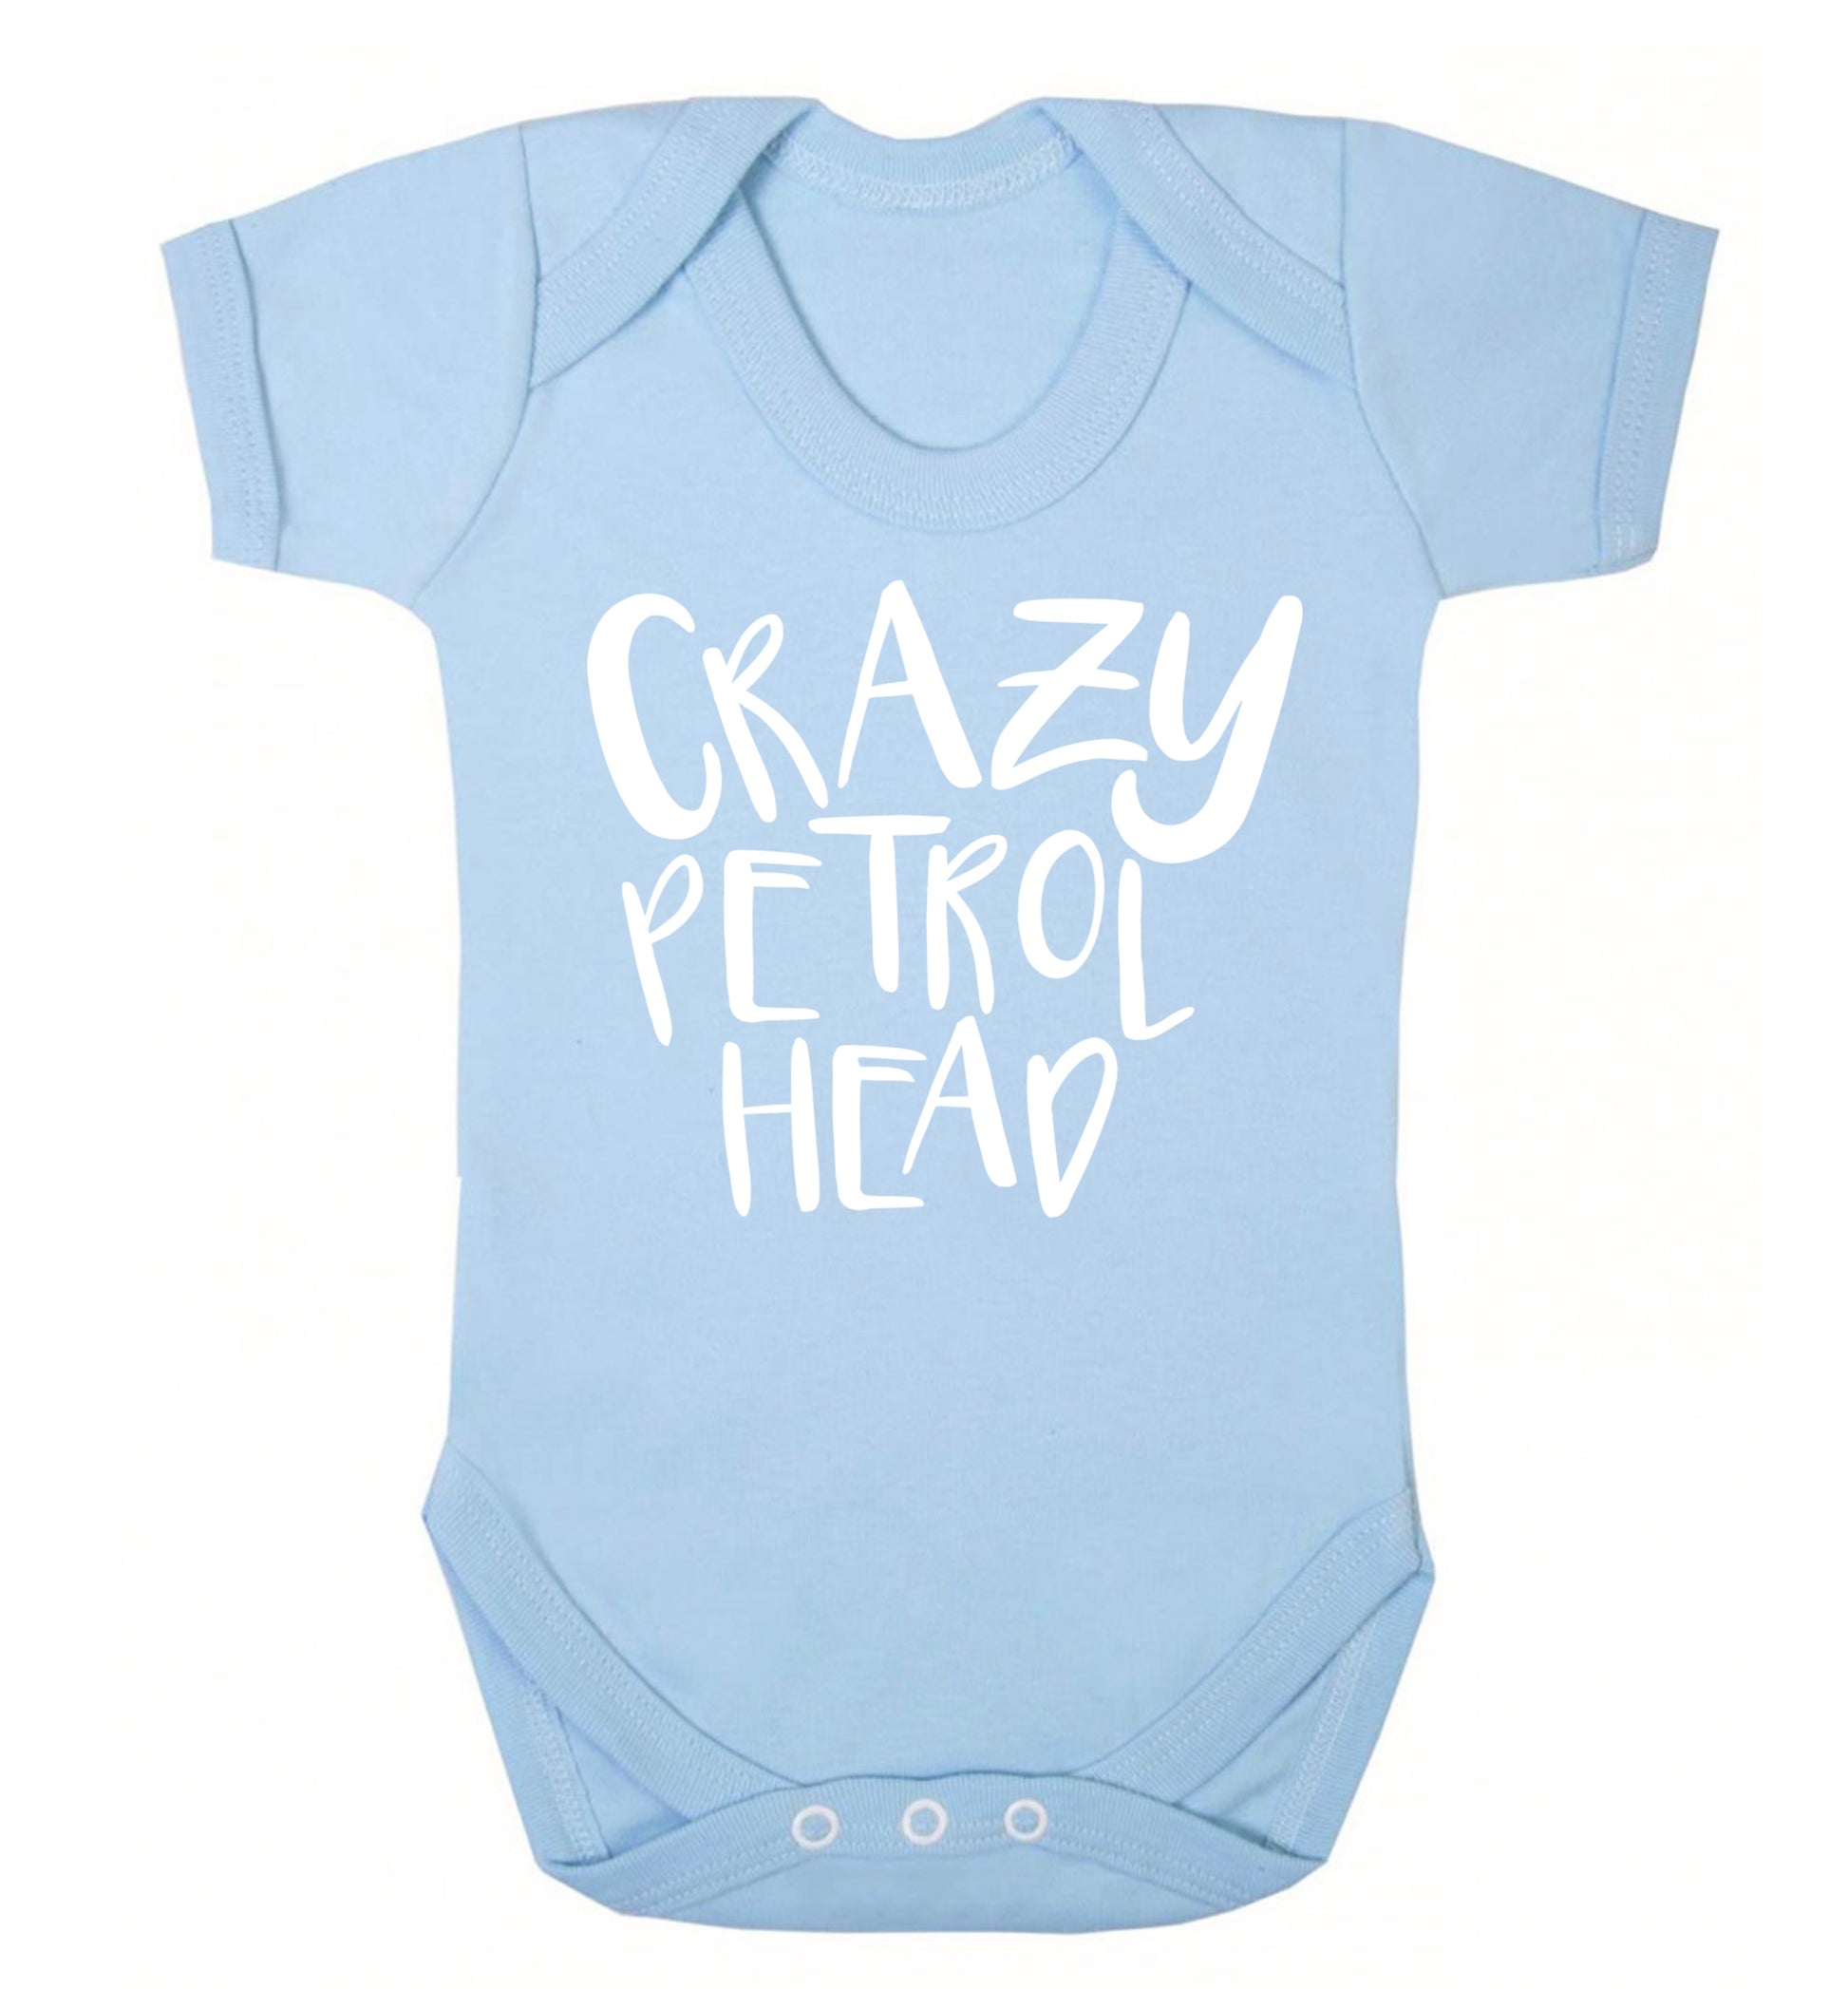 Crazy petrol head Baby Vest pale blue 18-24 months